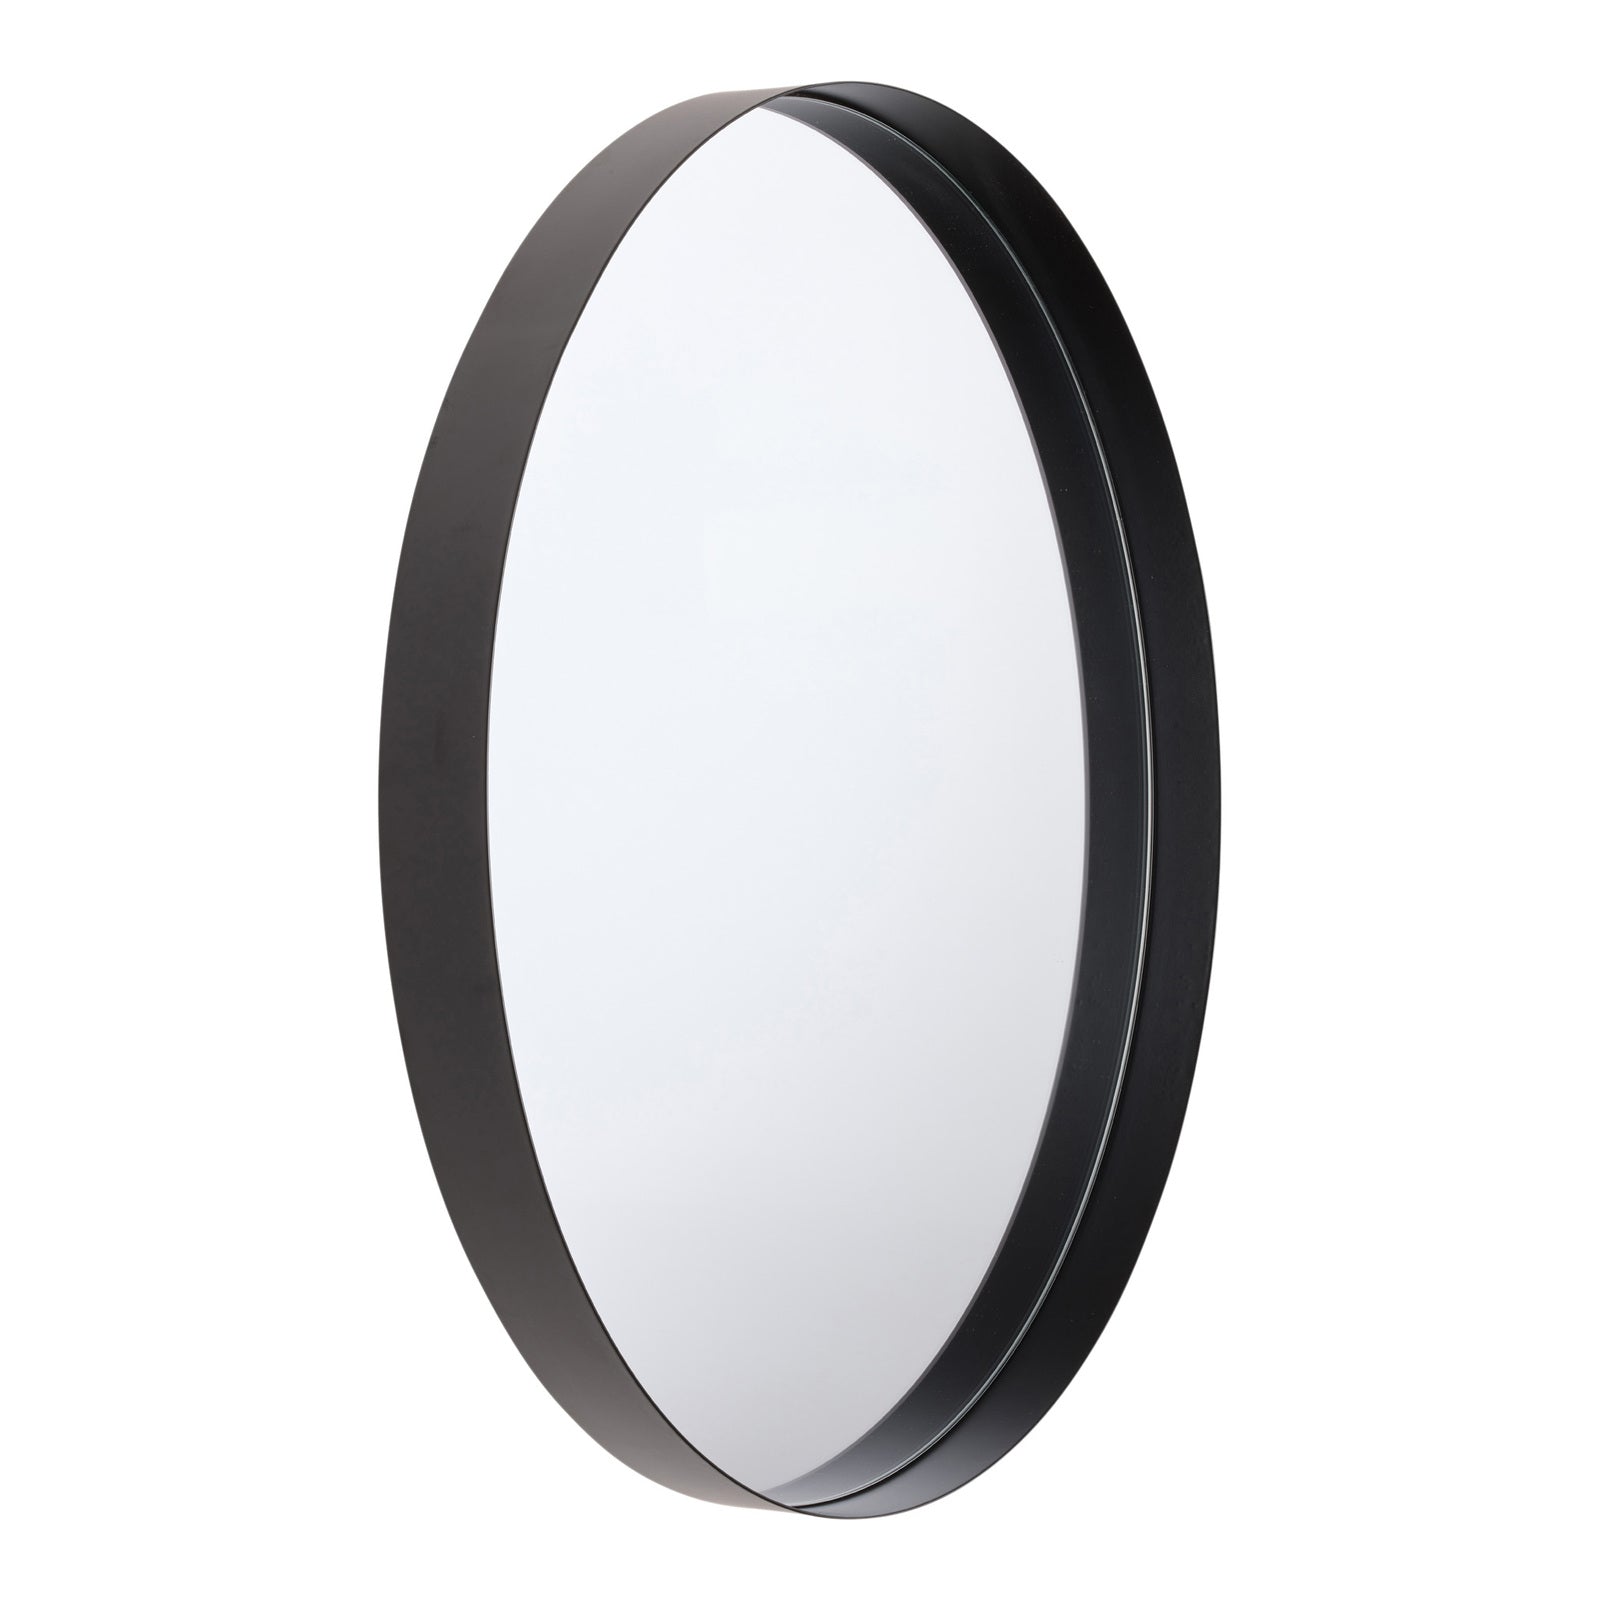 GEMMA 80cm Stainless Steel Mirror - Black